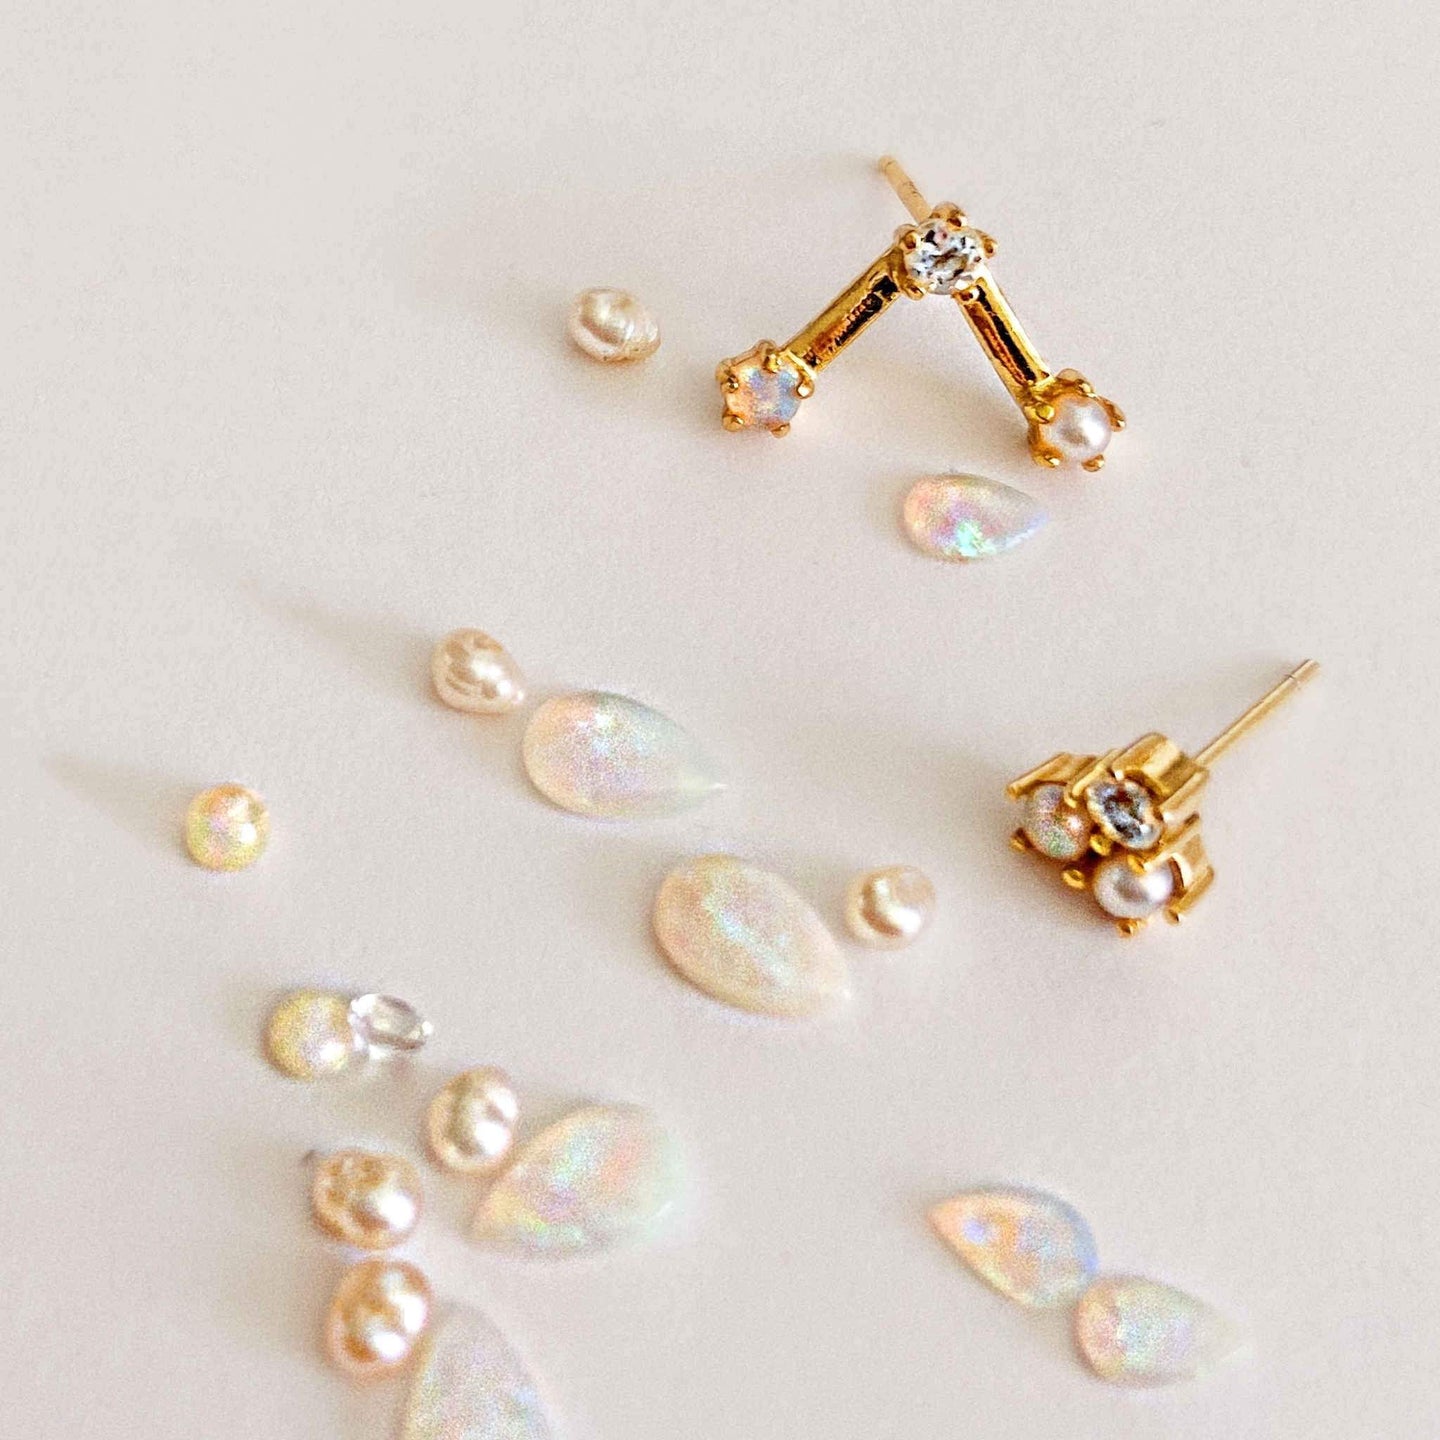 Australian white opal earrings